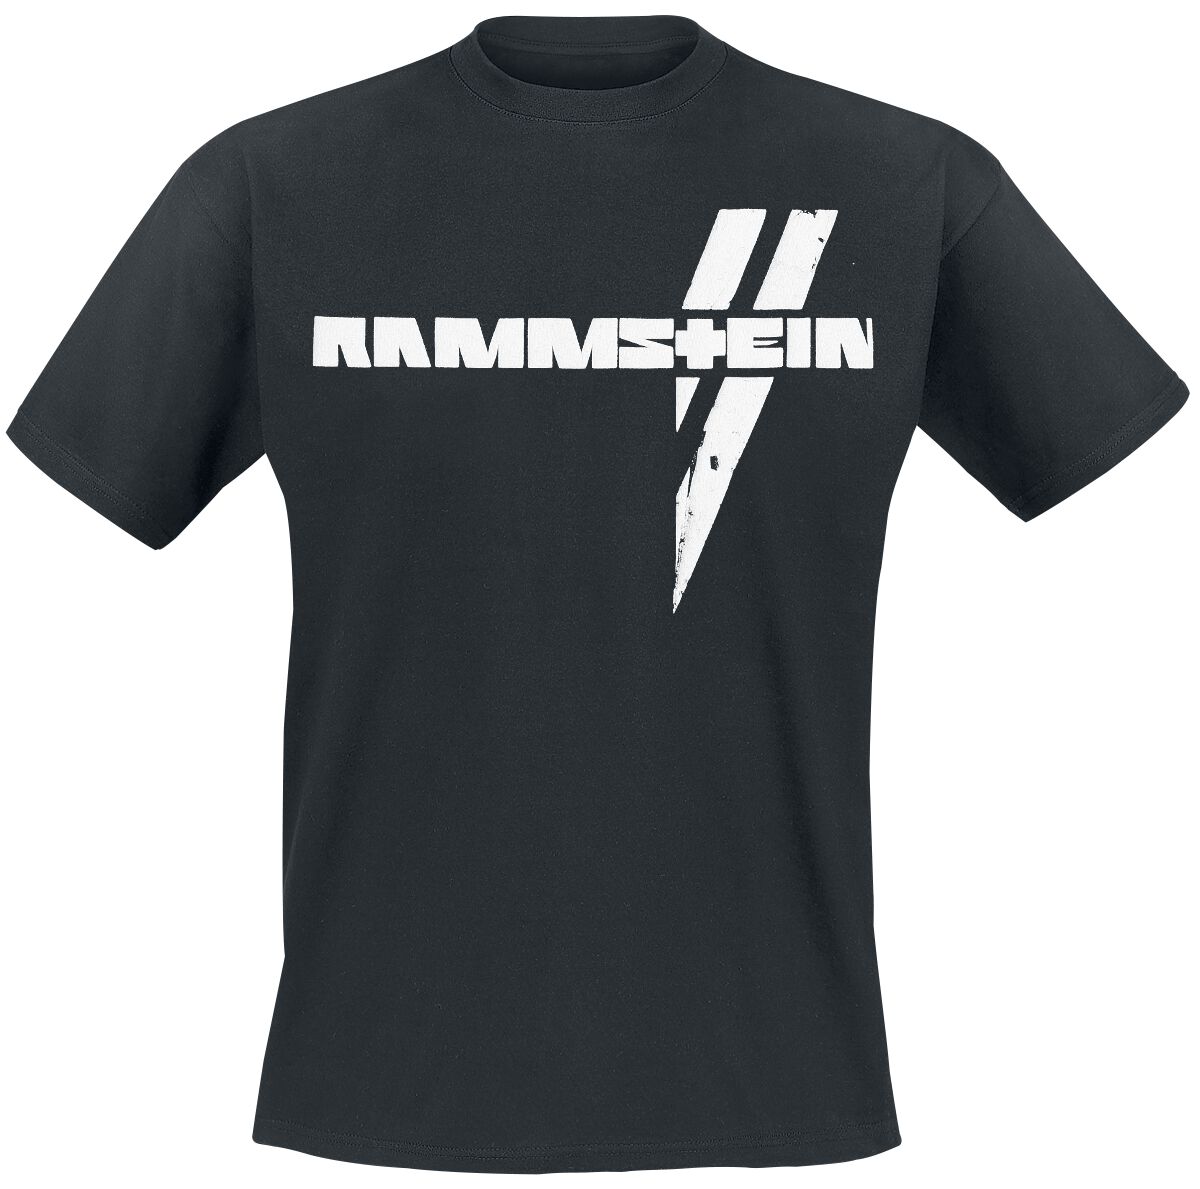 Rammstein T-Shirt - Weiße Balken - S bis 5XL - für Männer - Größe 4XL - schwarz  - Lizenziertes Merchandise!